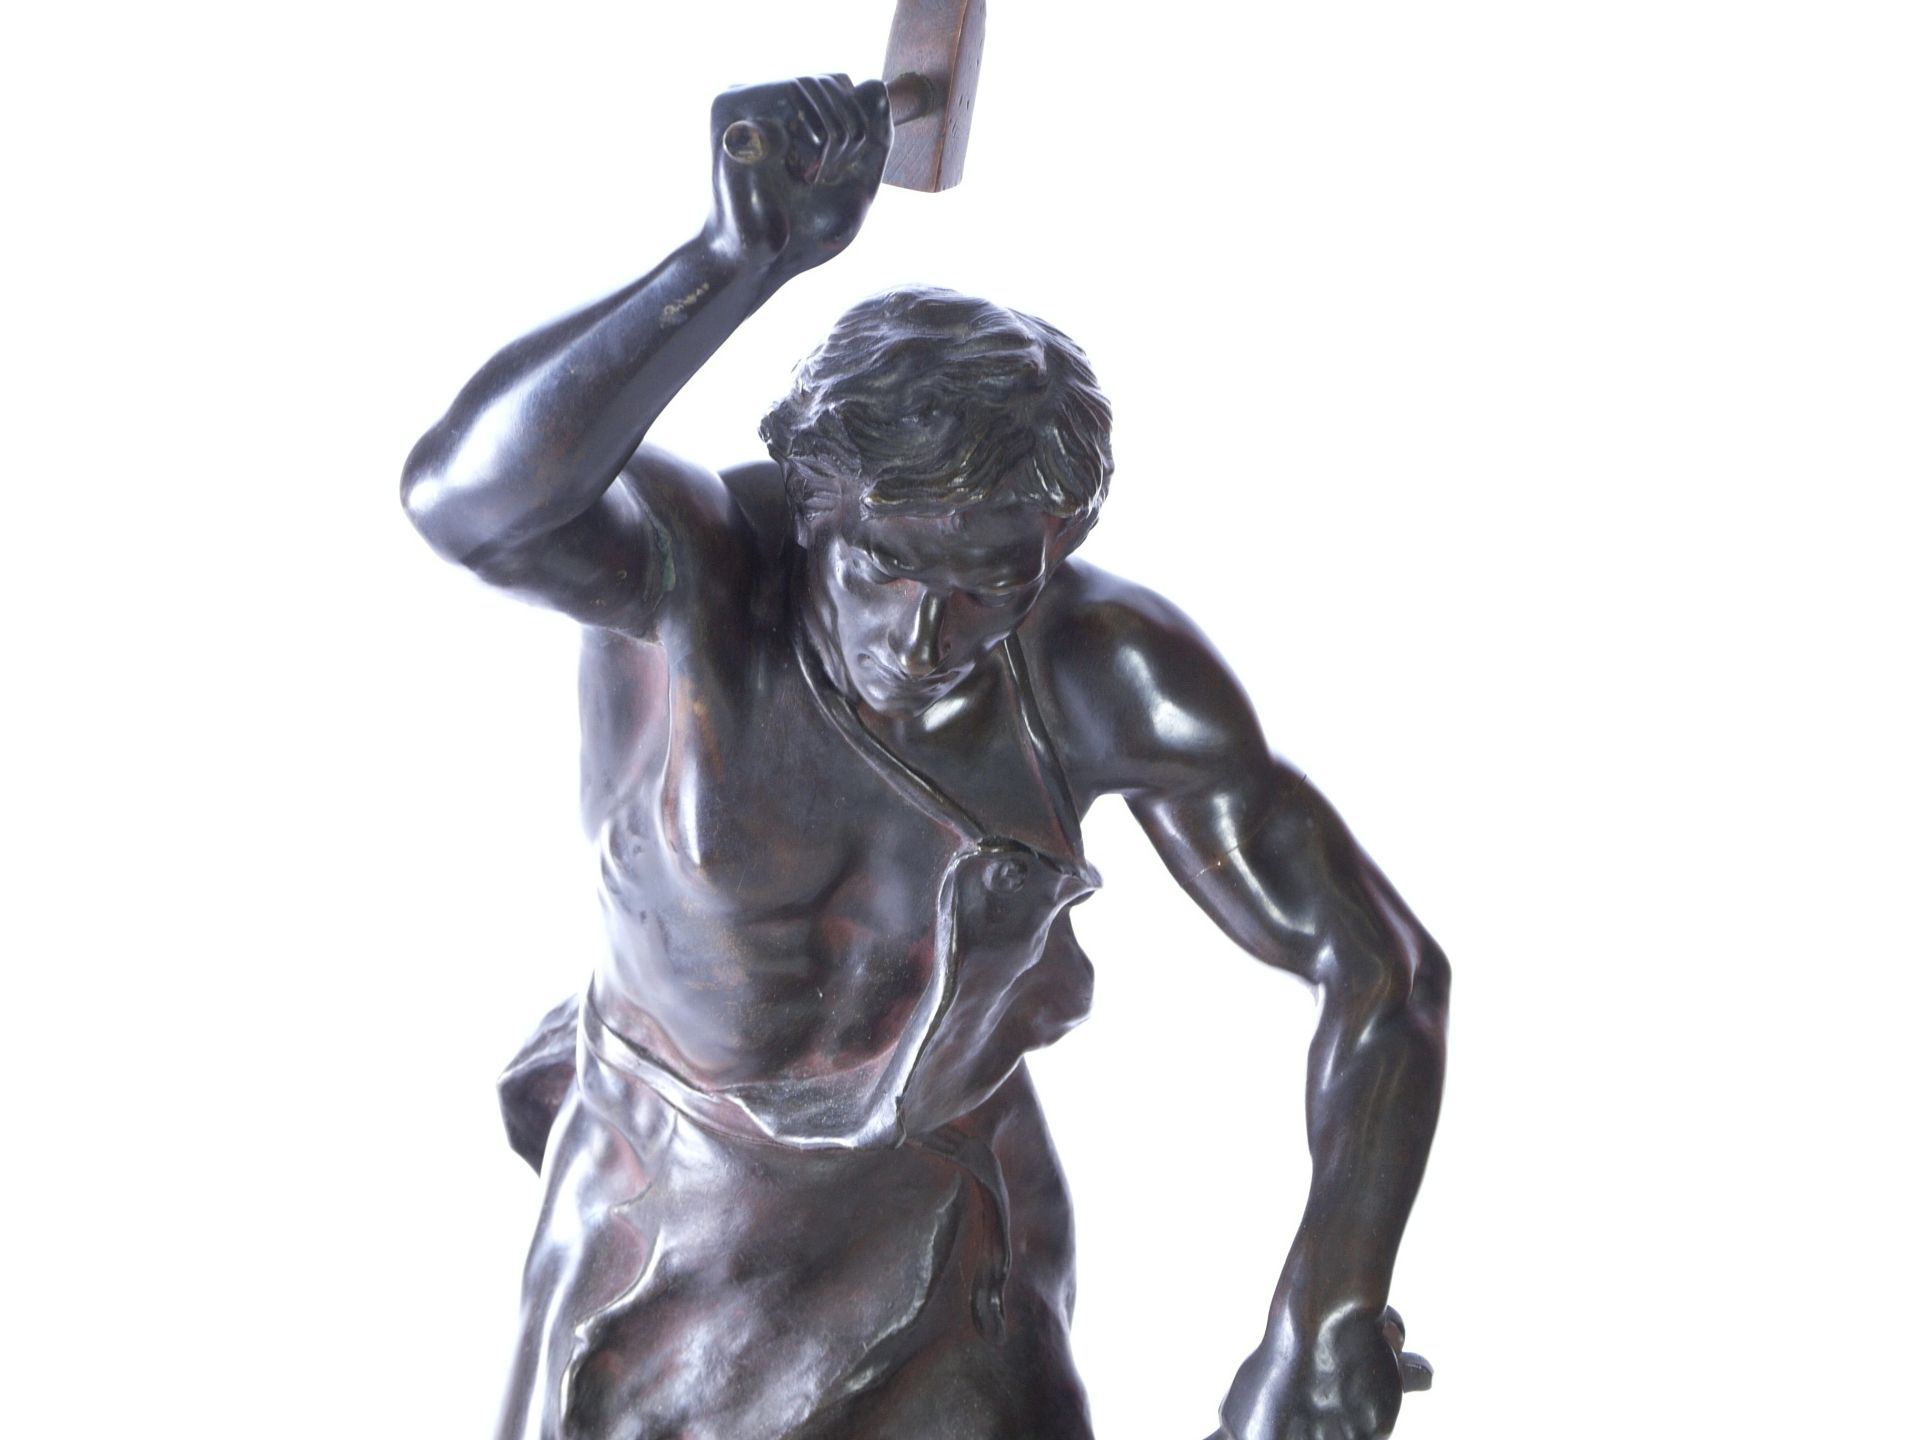 Gaudez, Adrien Etienne (1845-1902) - Große Bronze "Der Schmied" - Bild 3 aus 11